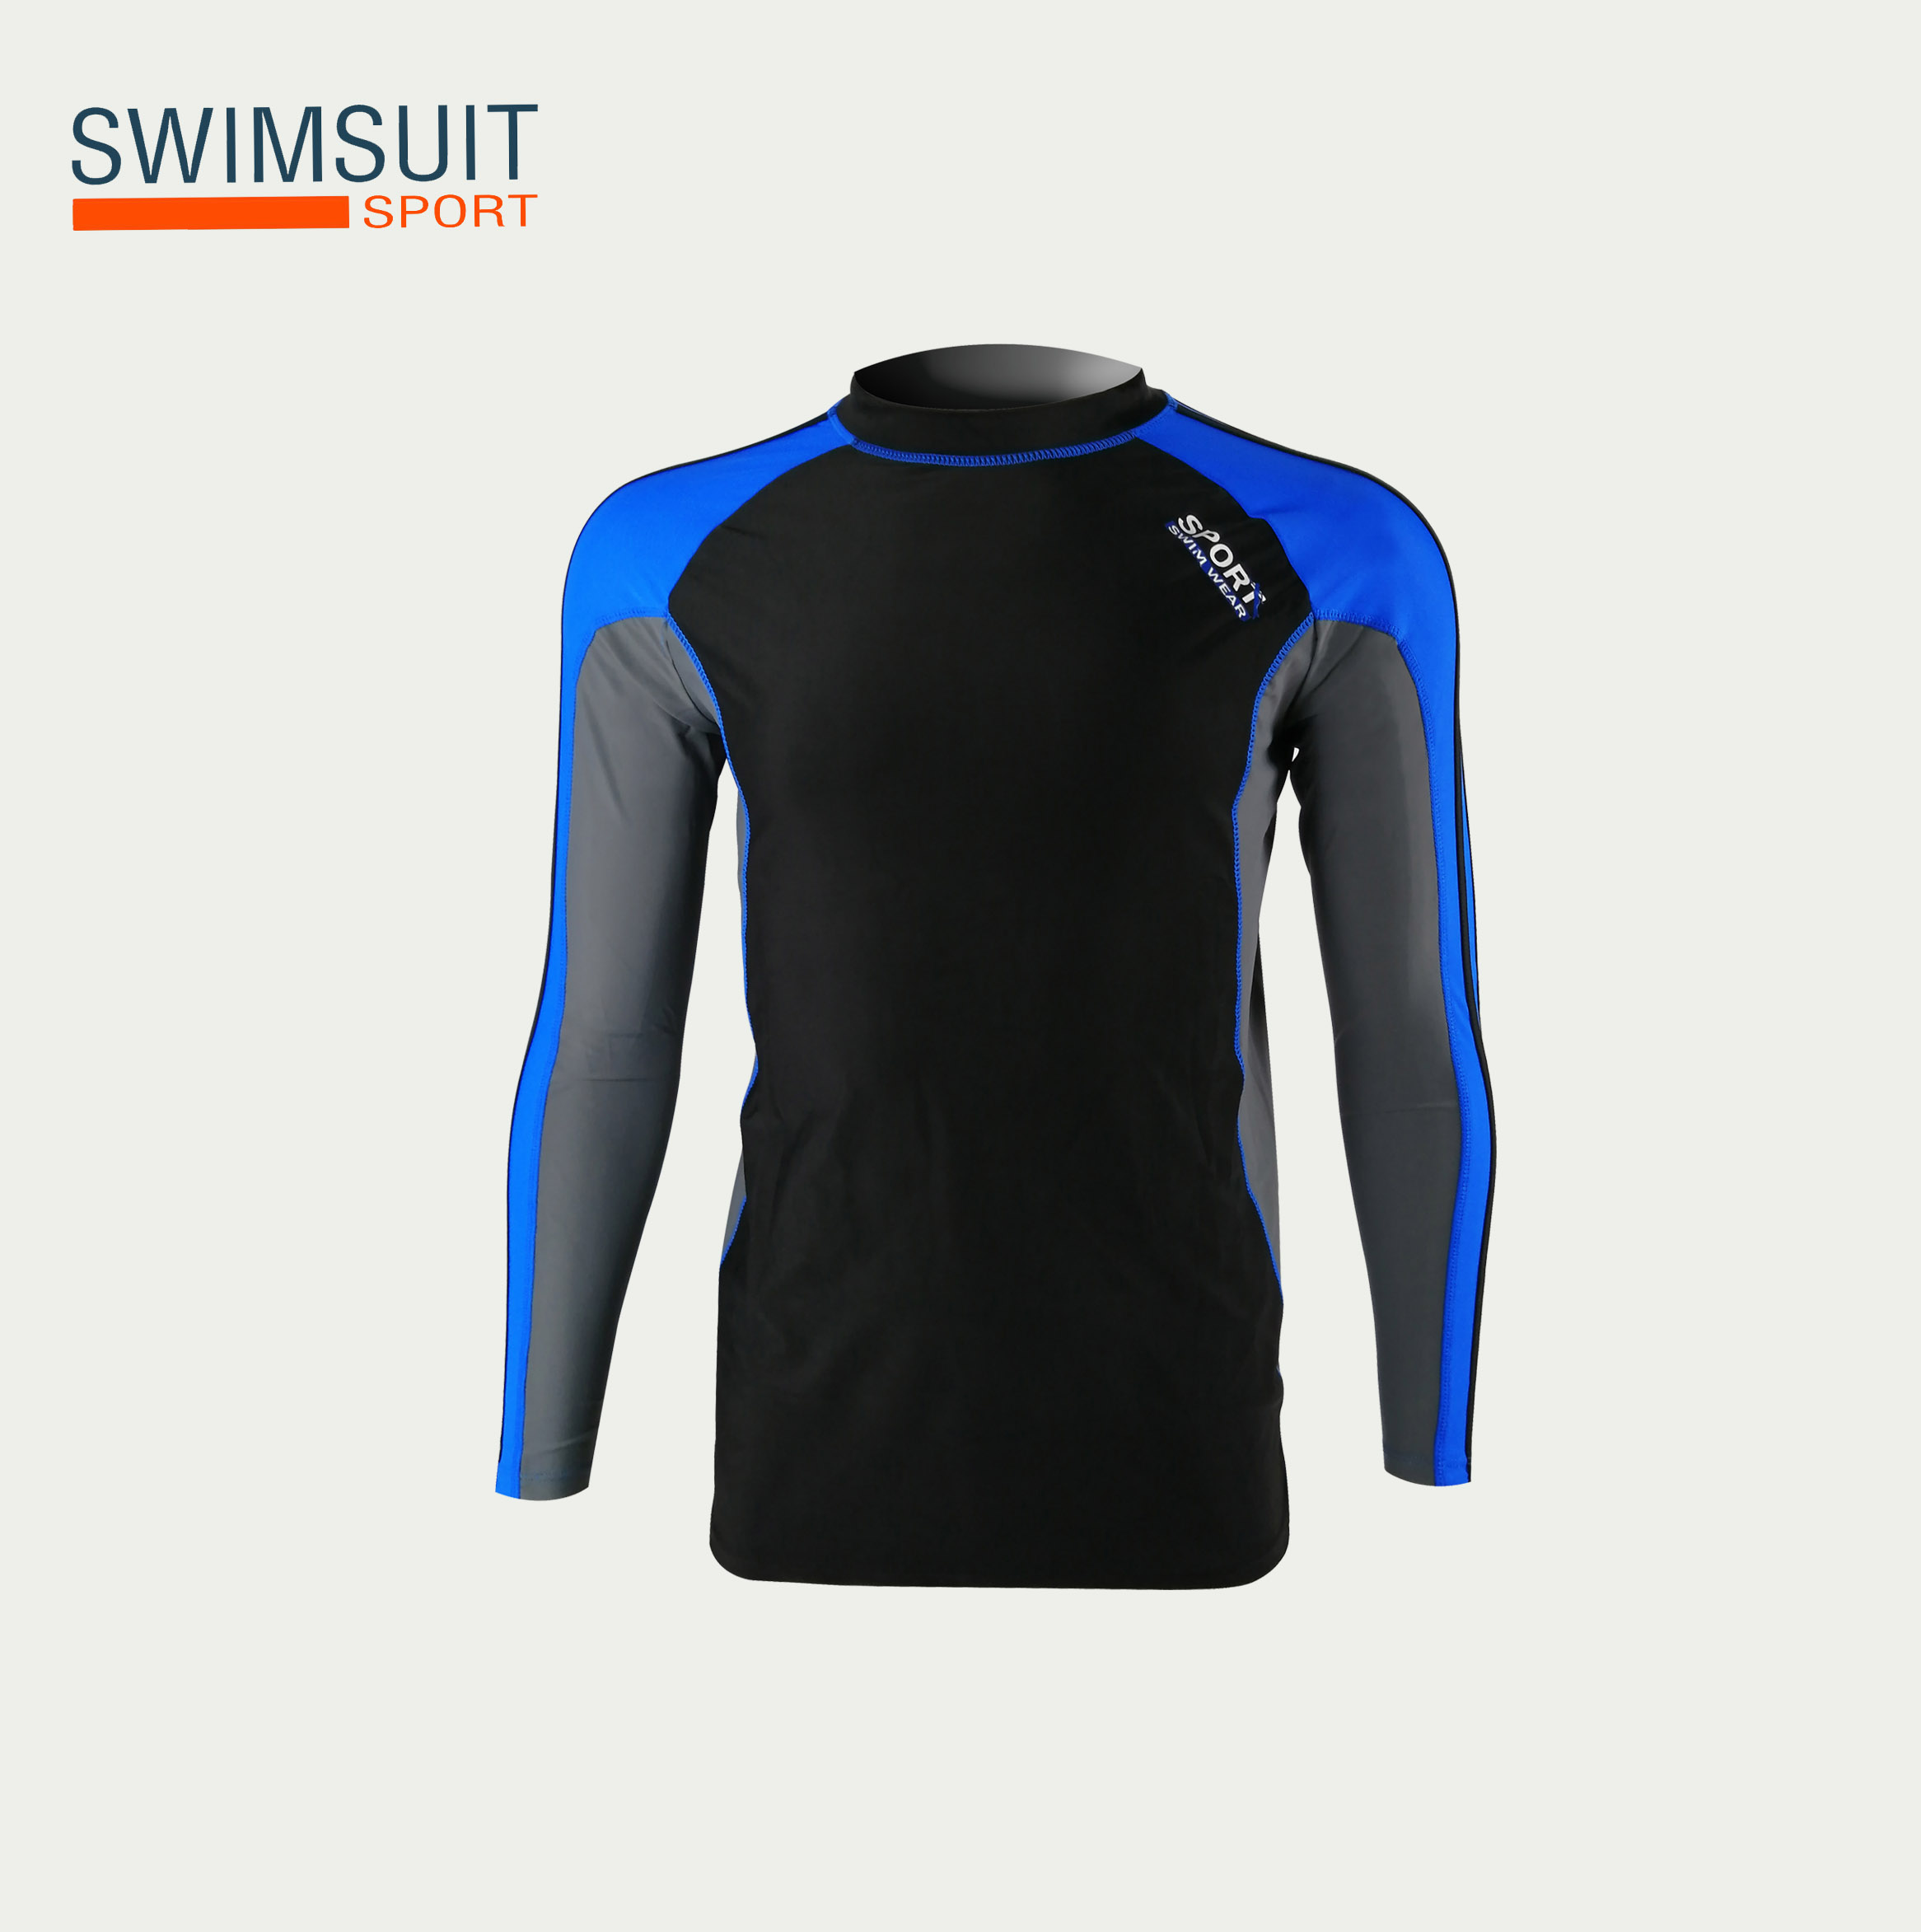 ชุดว่ายน้ำชาย ชุดว่ายน้ำชายแขนยาว สีดำ ผ้ากันยูวีอย่างดี เสื้อยืดกีฬา 91625